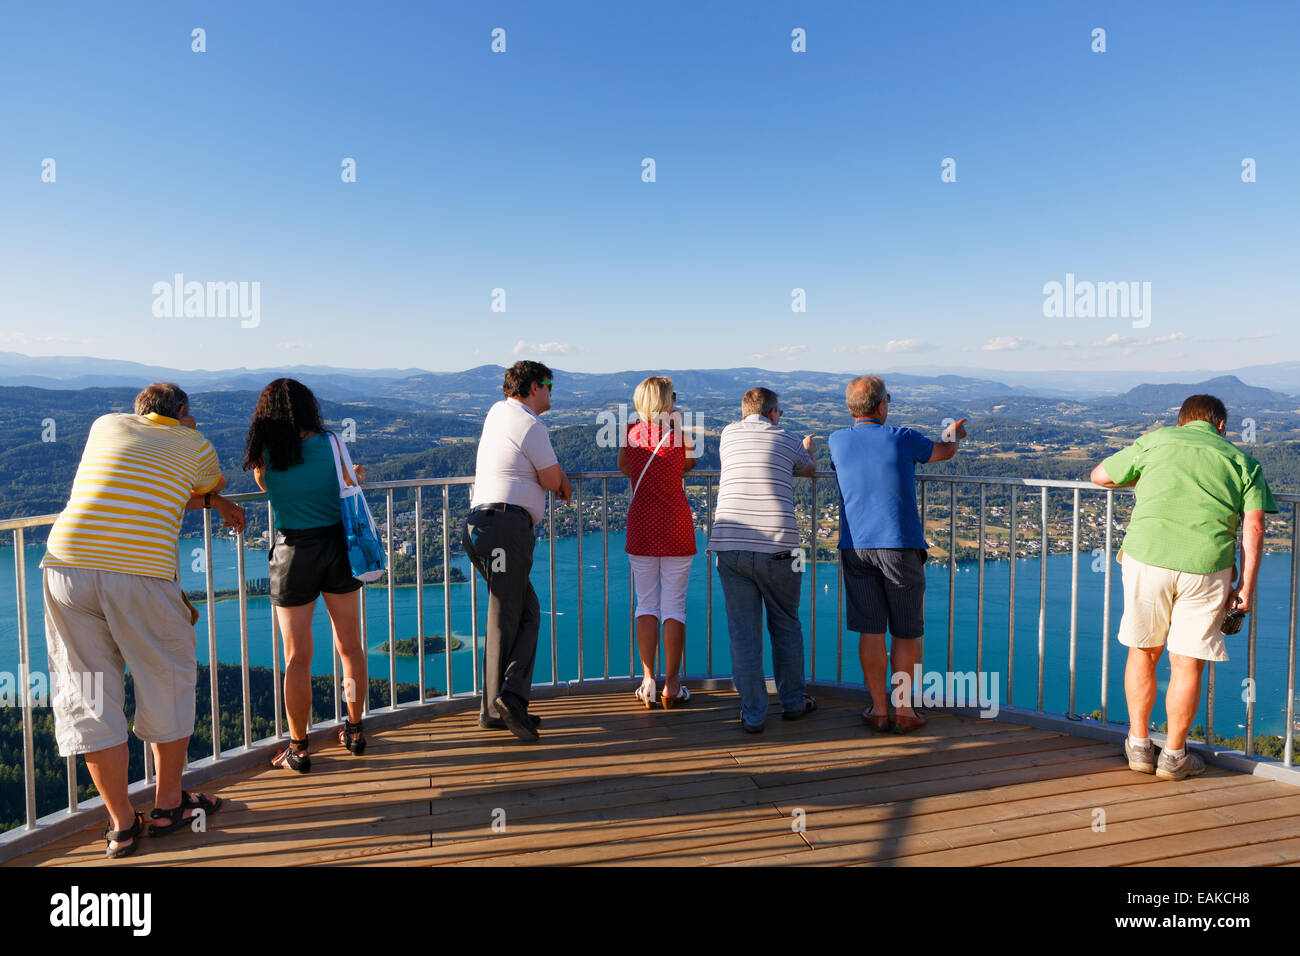 Piattaforma di visualizzazione della nuova torre di vedetta, Pyramidenkogel montagna, lago Woerth, Keutschach am See, in Carinzia, Austria Foto Stock